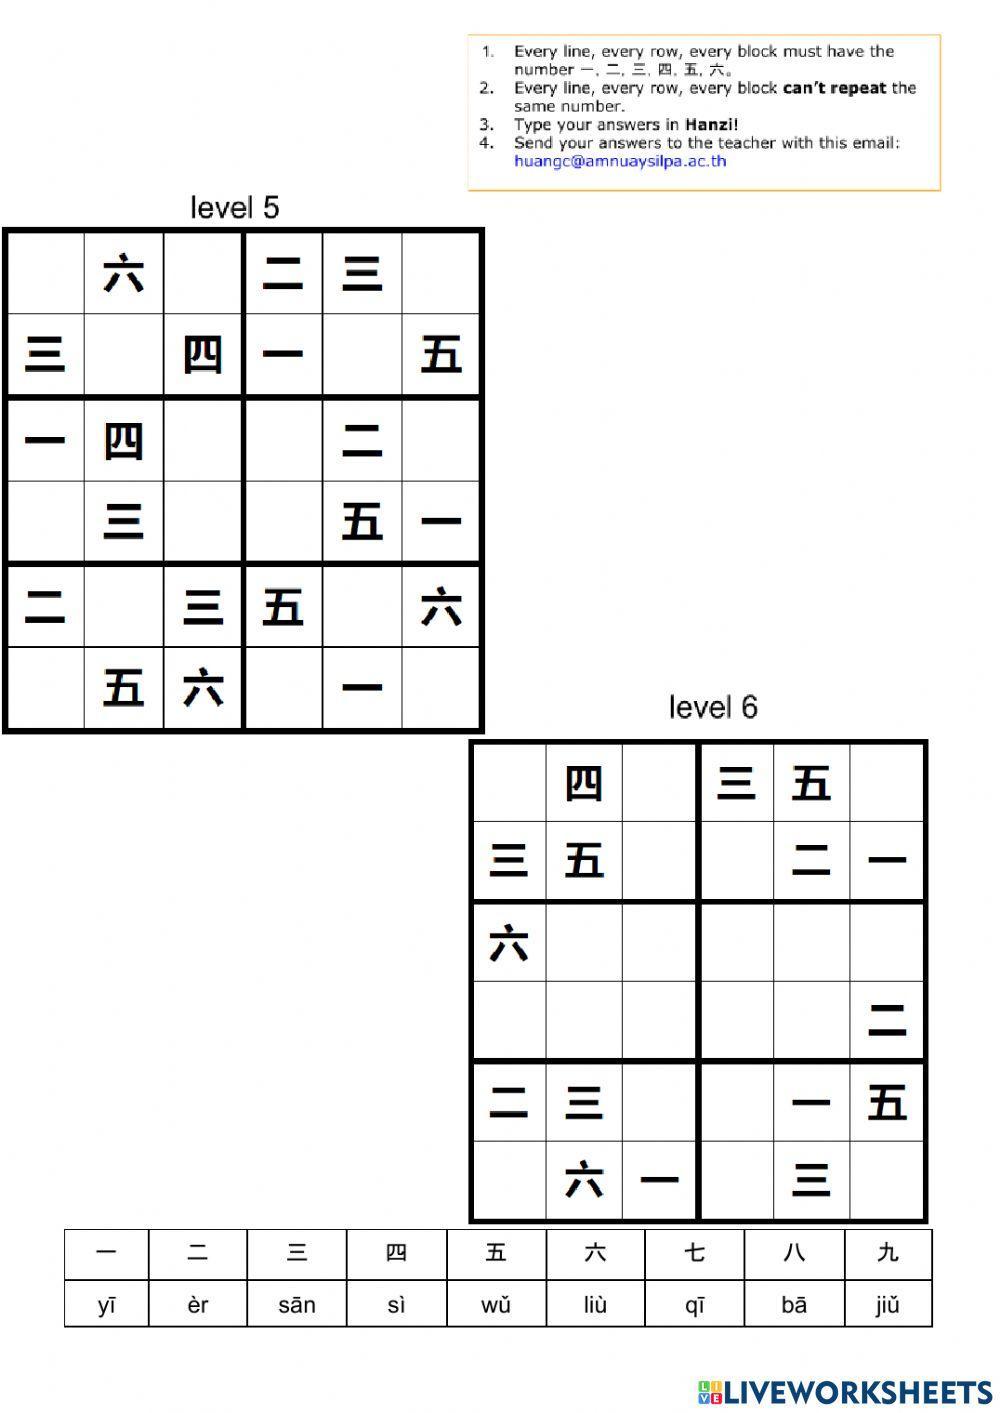 Chinese Sudoku 中文数独